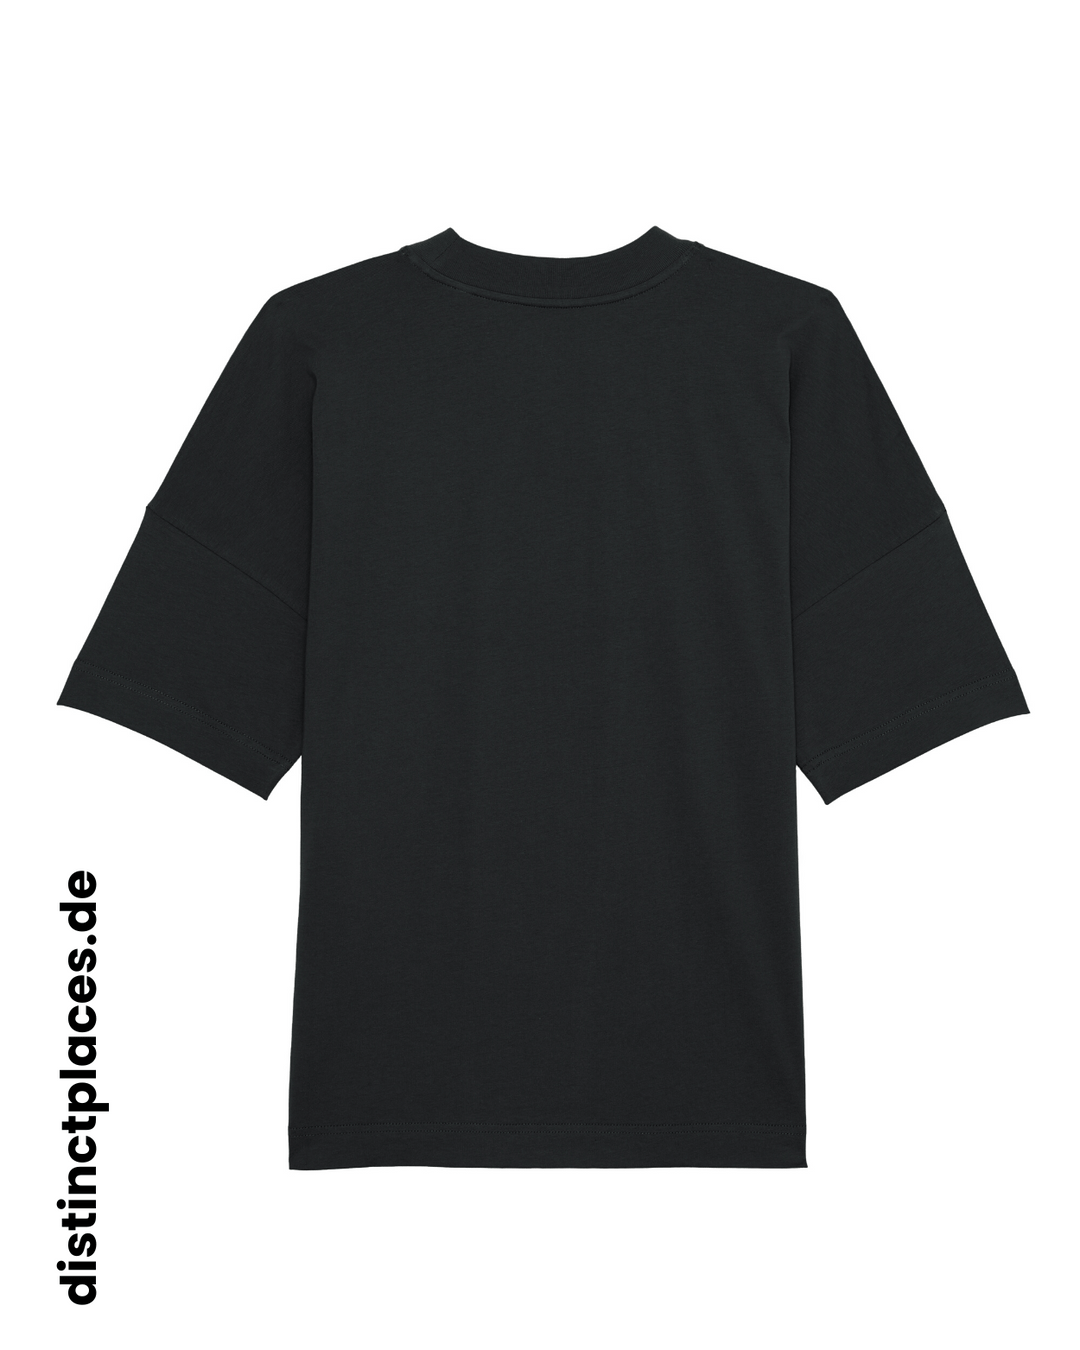 Schwarzes fairtrade, vegan und bio-baumwoll Oversized T-Shirt von hinten mit einem minimalistischem weißen Logo, beziehungsweise Schriftzug für Wiesbaden